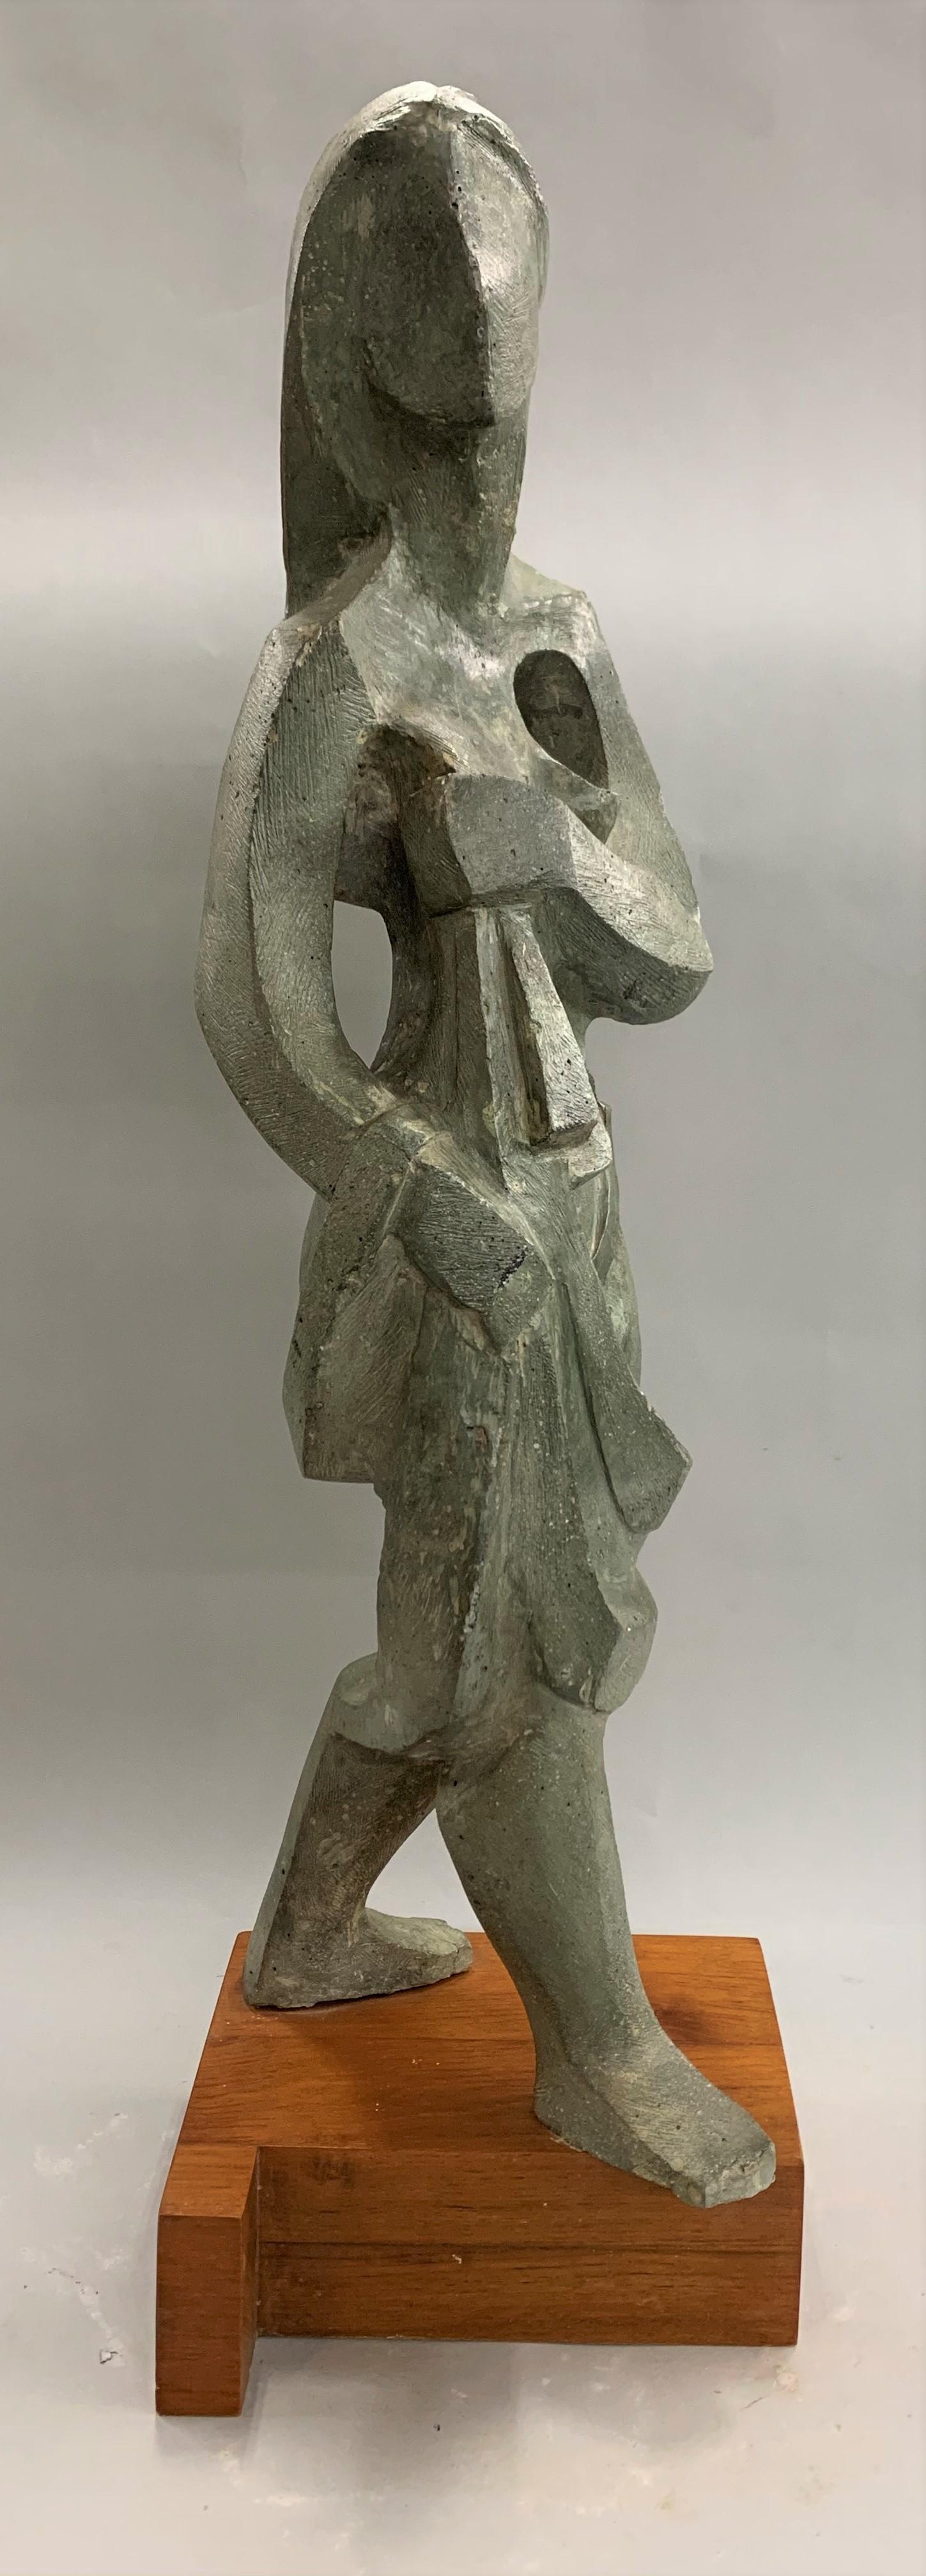 Woman Walking - Sculpture by Robert Hughes